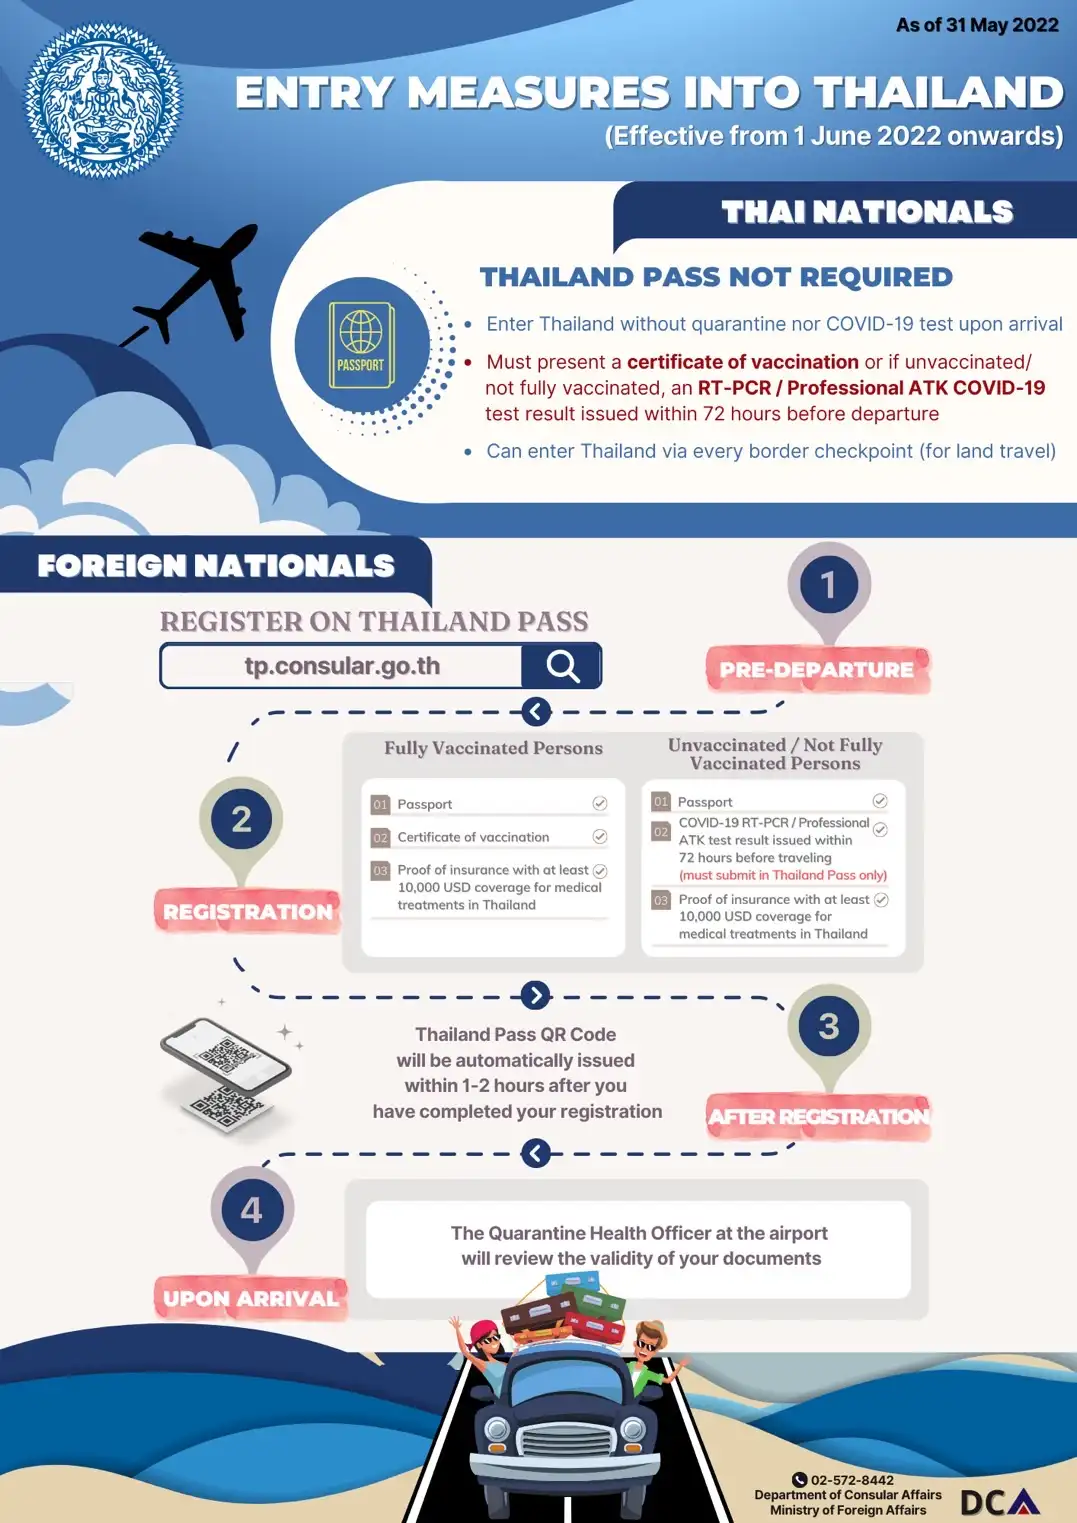 Die Aktuellen Einreisemaßnahmen (per Flugzeuge) für Thailand ab dem 01.06.2022 sind wie folgt; HealthServ